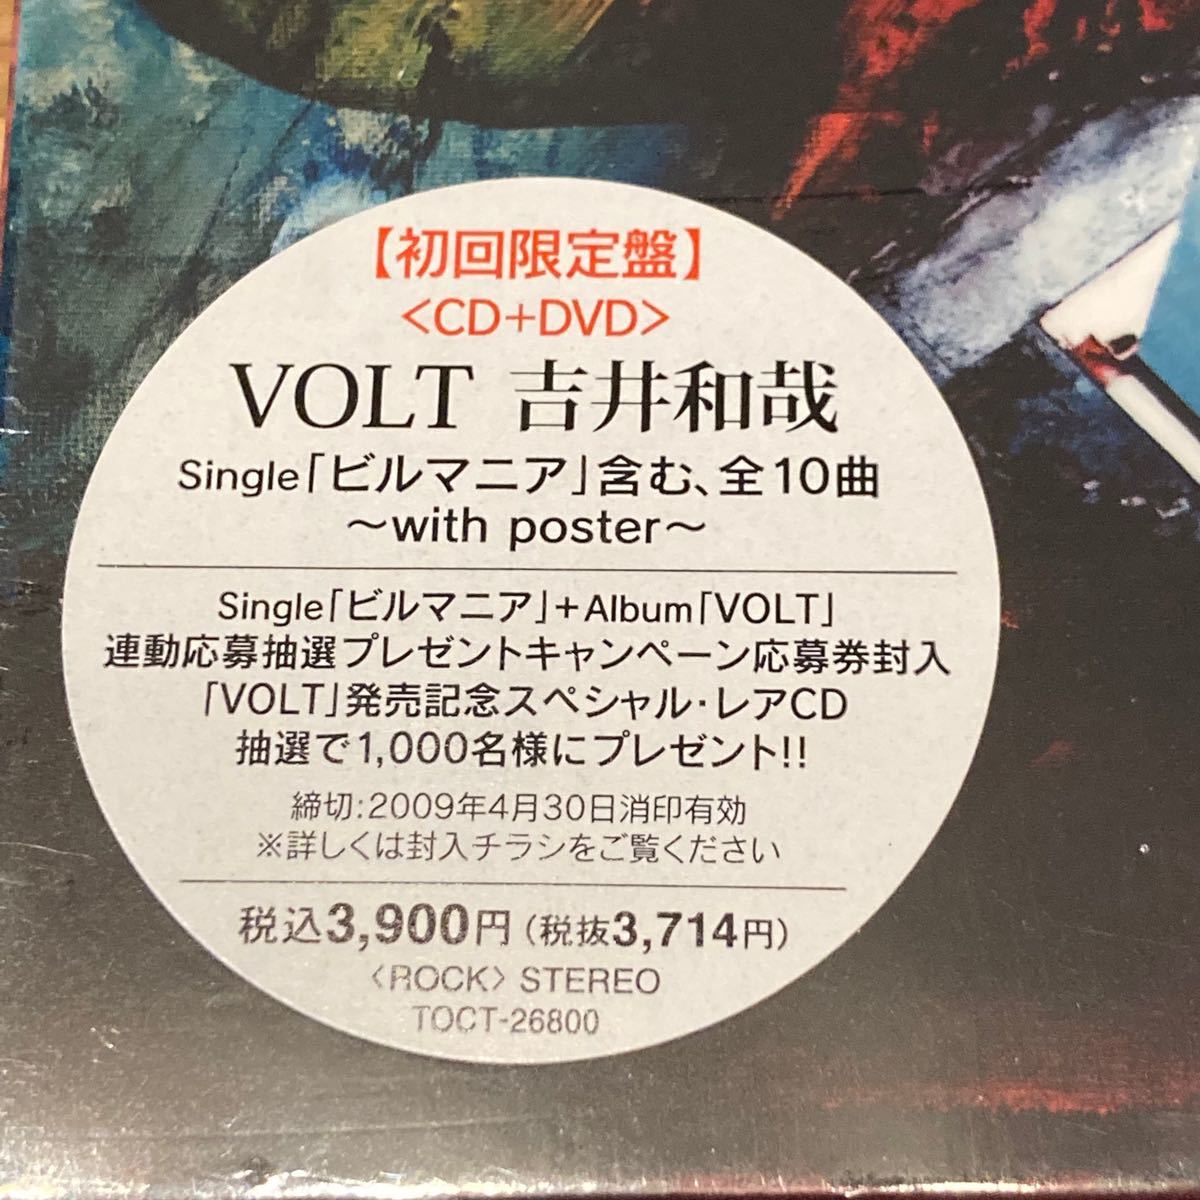 吉井和哉 VOLT 初回限定盤【CD+DVD】